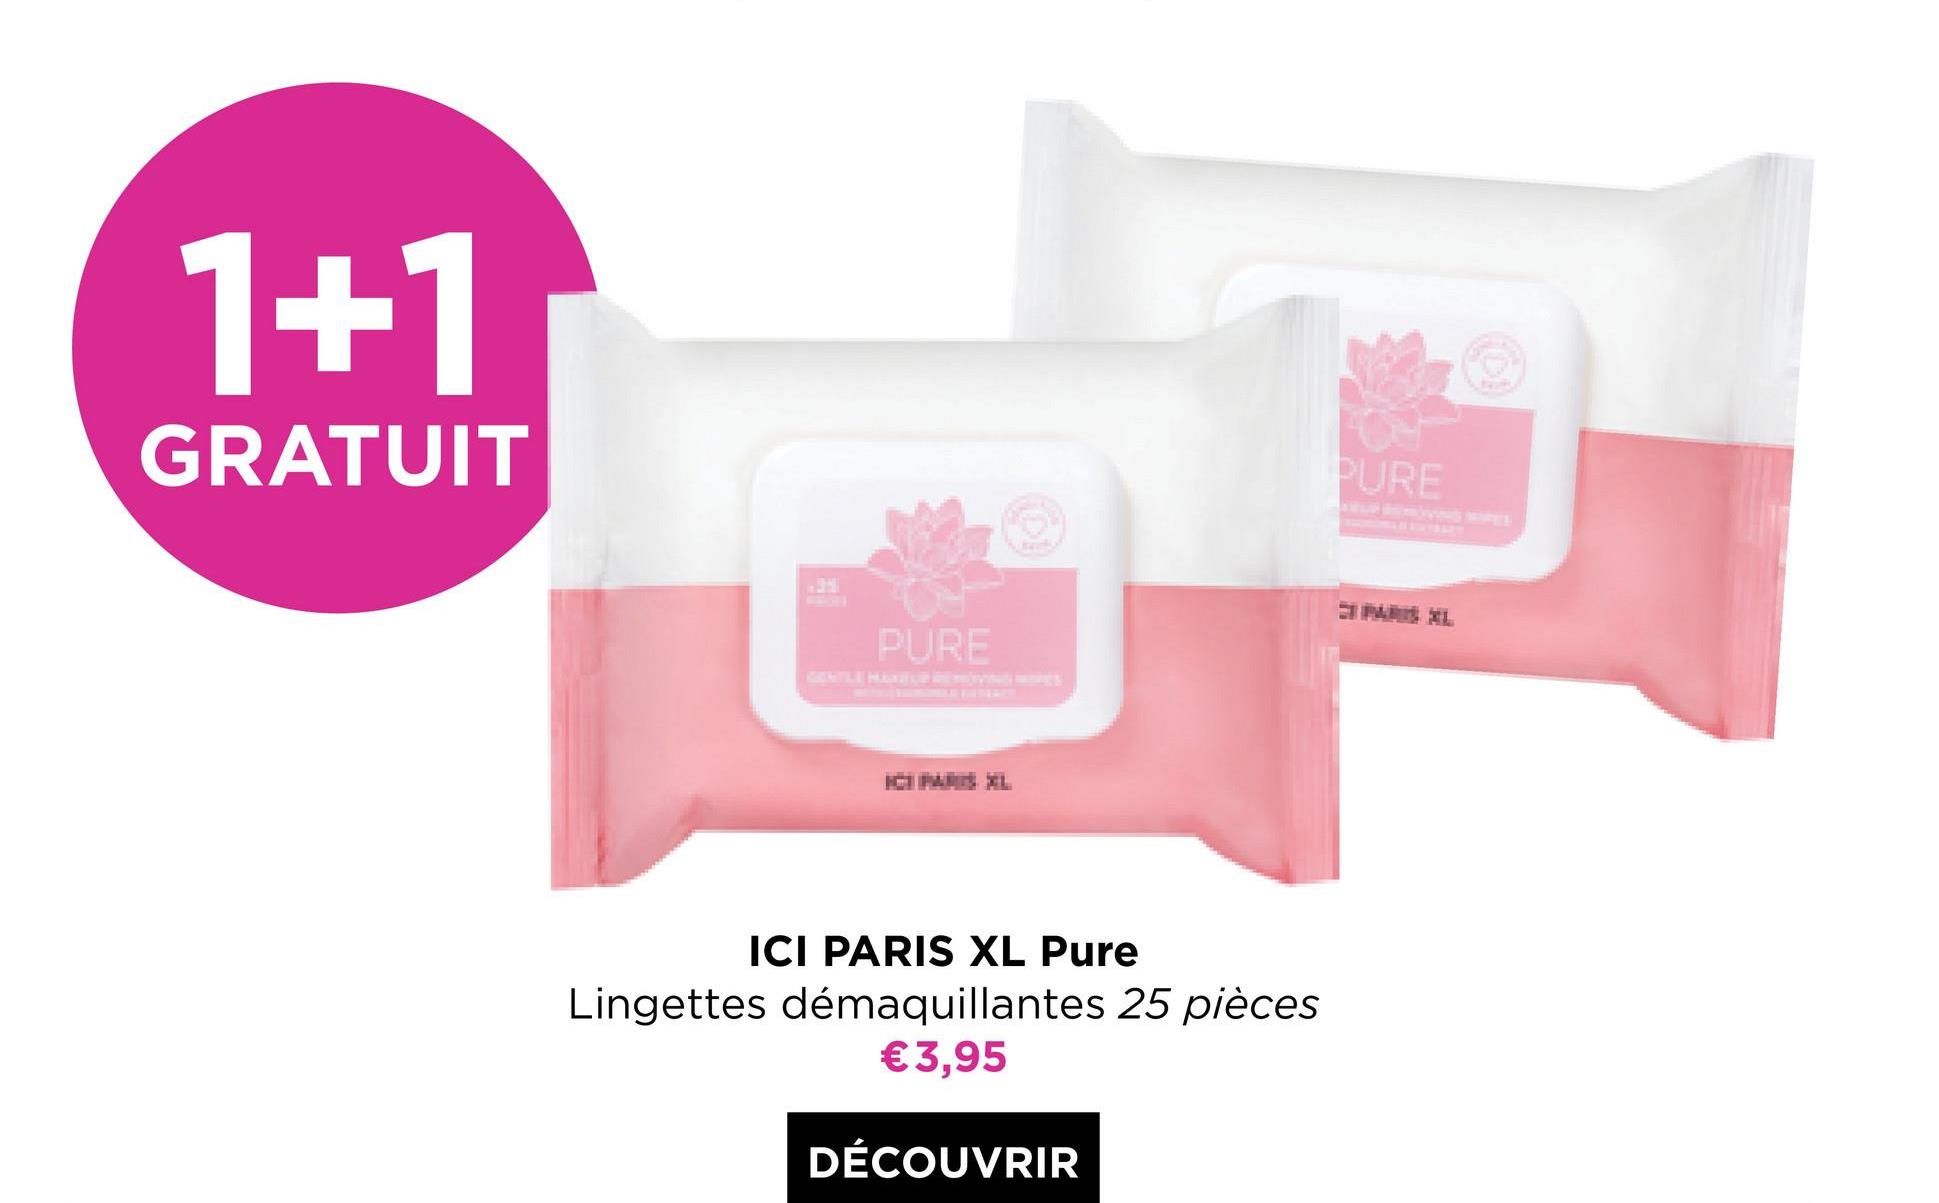 1+1
GRATUIT
PURE
P
PURE
ICI PARIS XL Pure
Lingettes démaquillantes 25 pièces
€3,95
DÉCOUVRIR